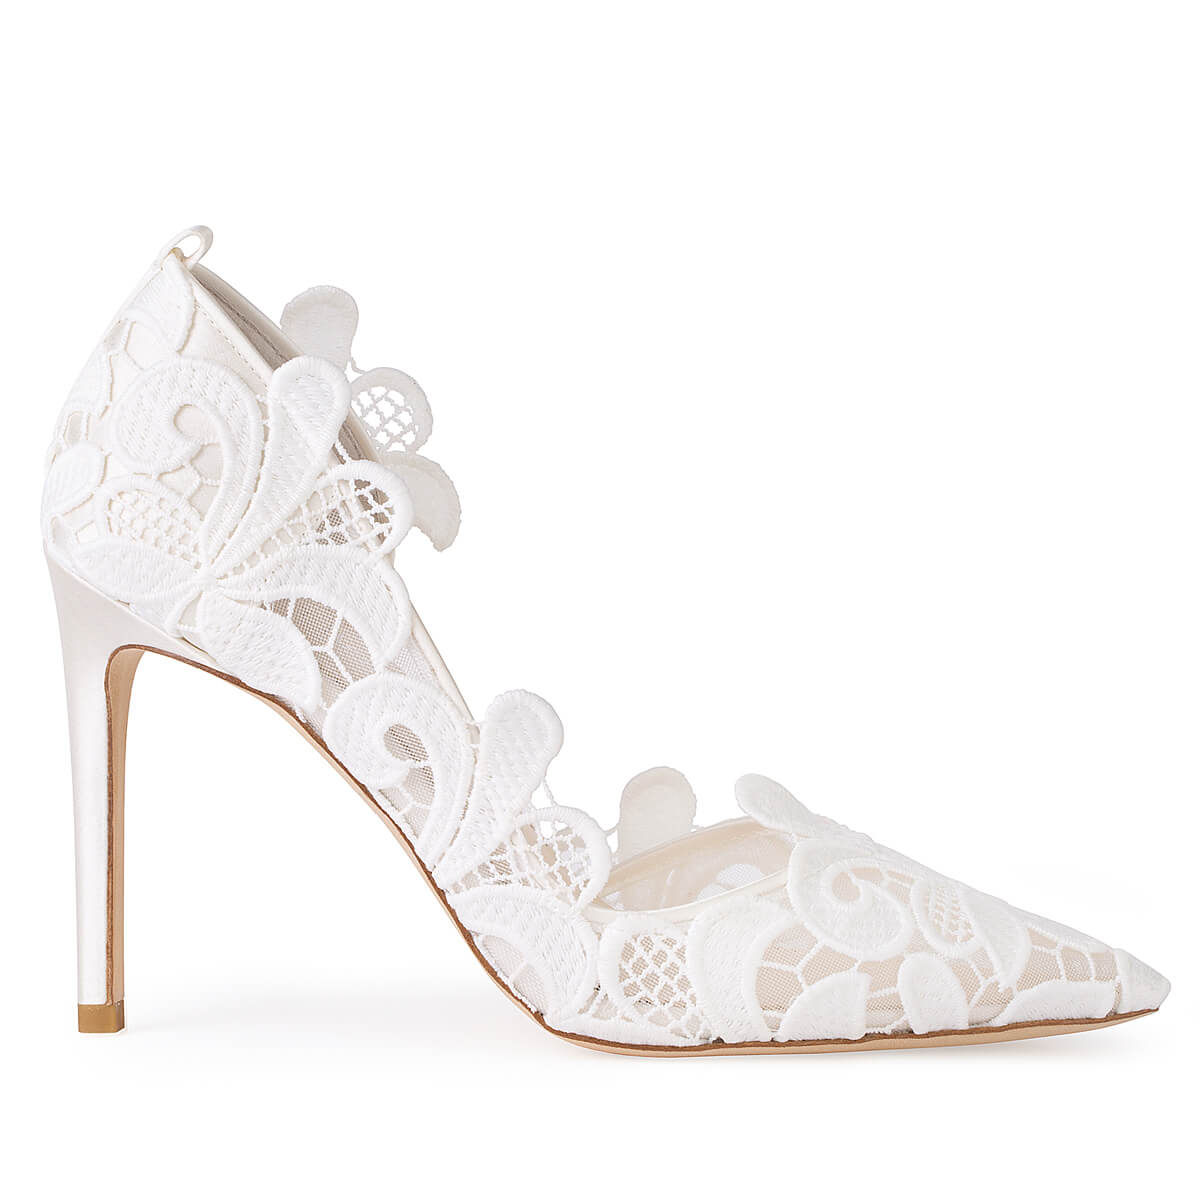 Swan Lake Inspired Ivory Lace Wedding Heels | Bella Belle